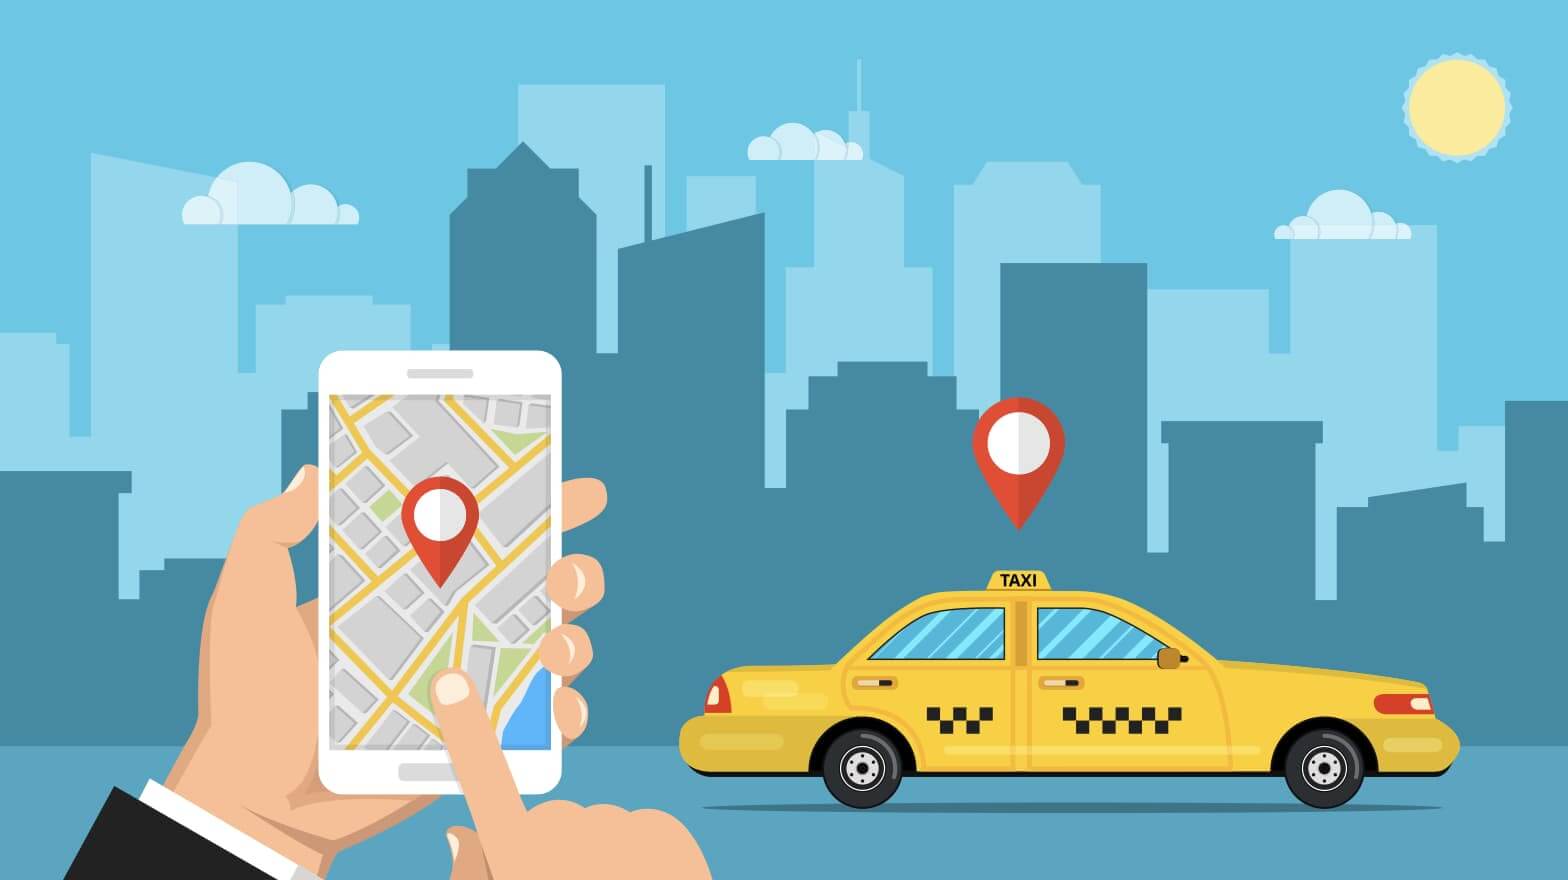 栃木で使えるタクシーアプリとクーポン情報